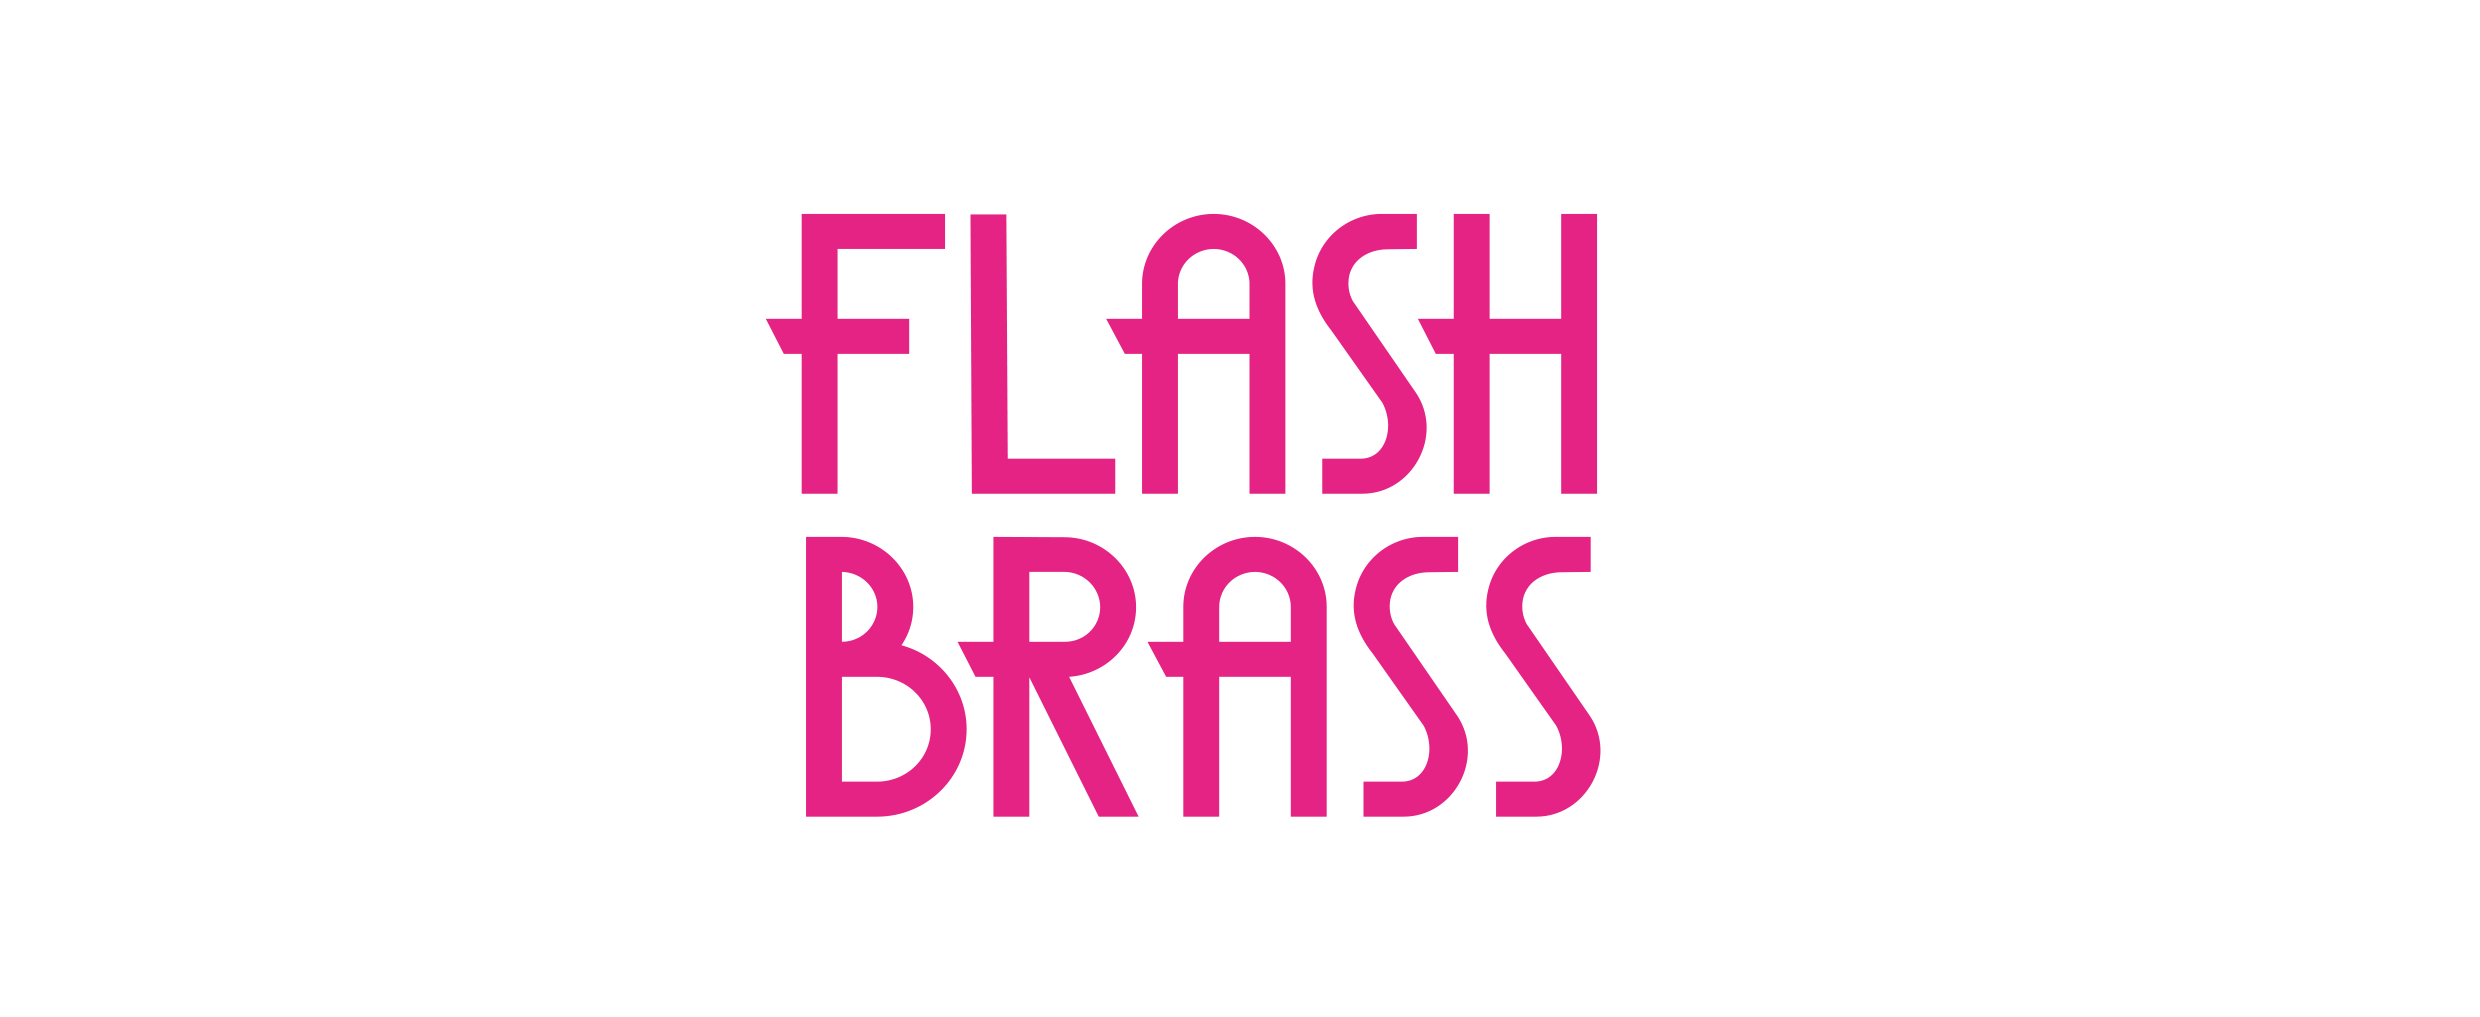 Flash Brass